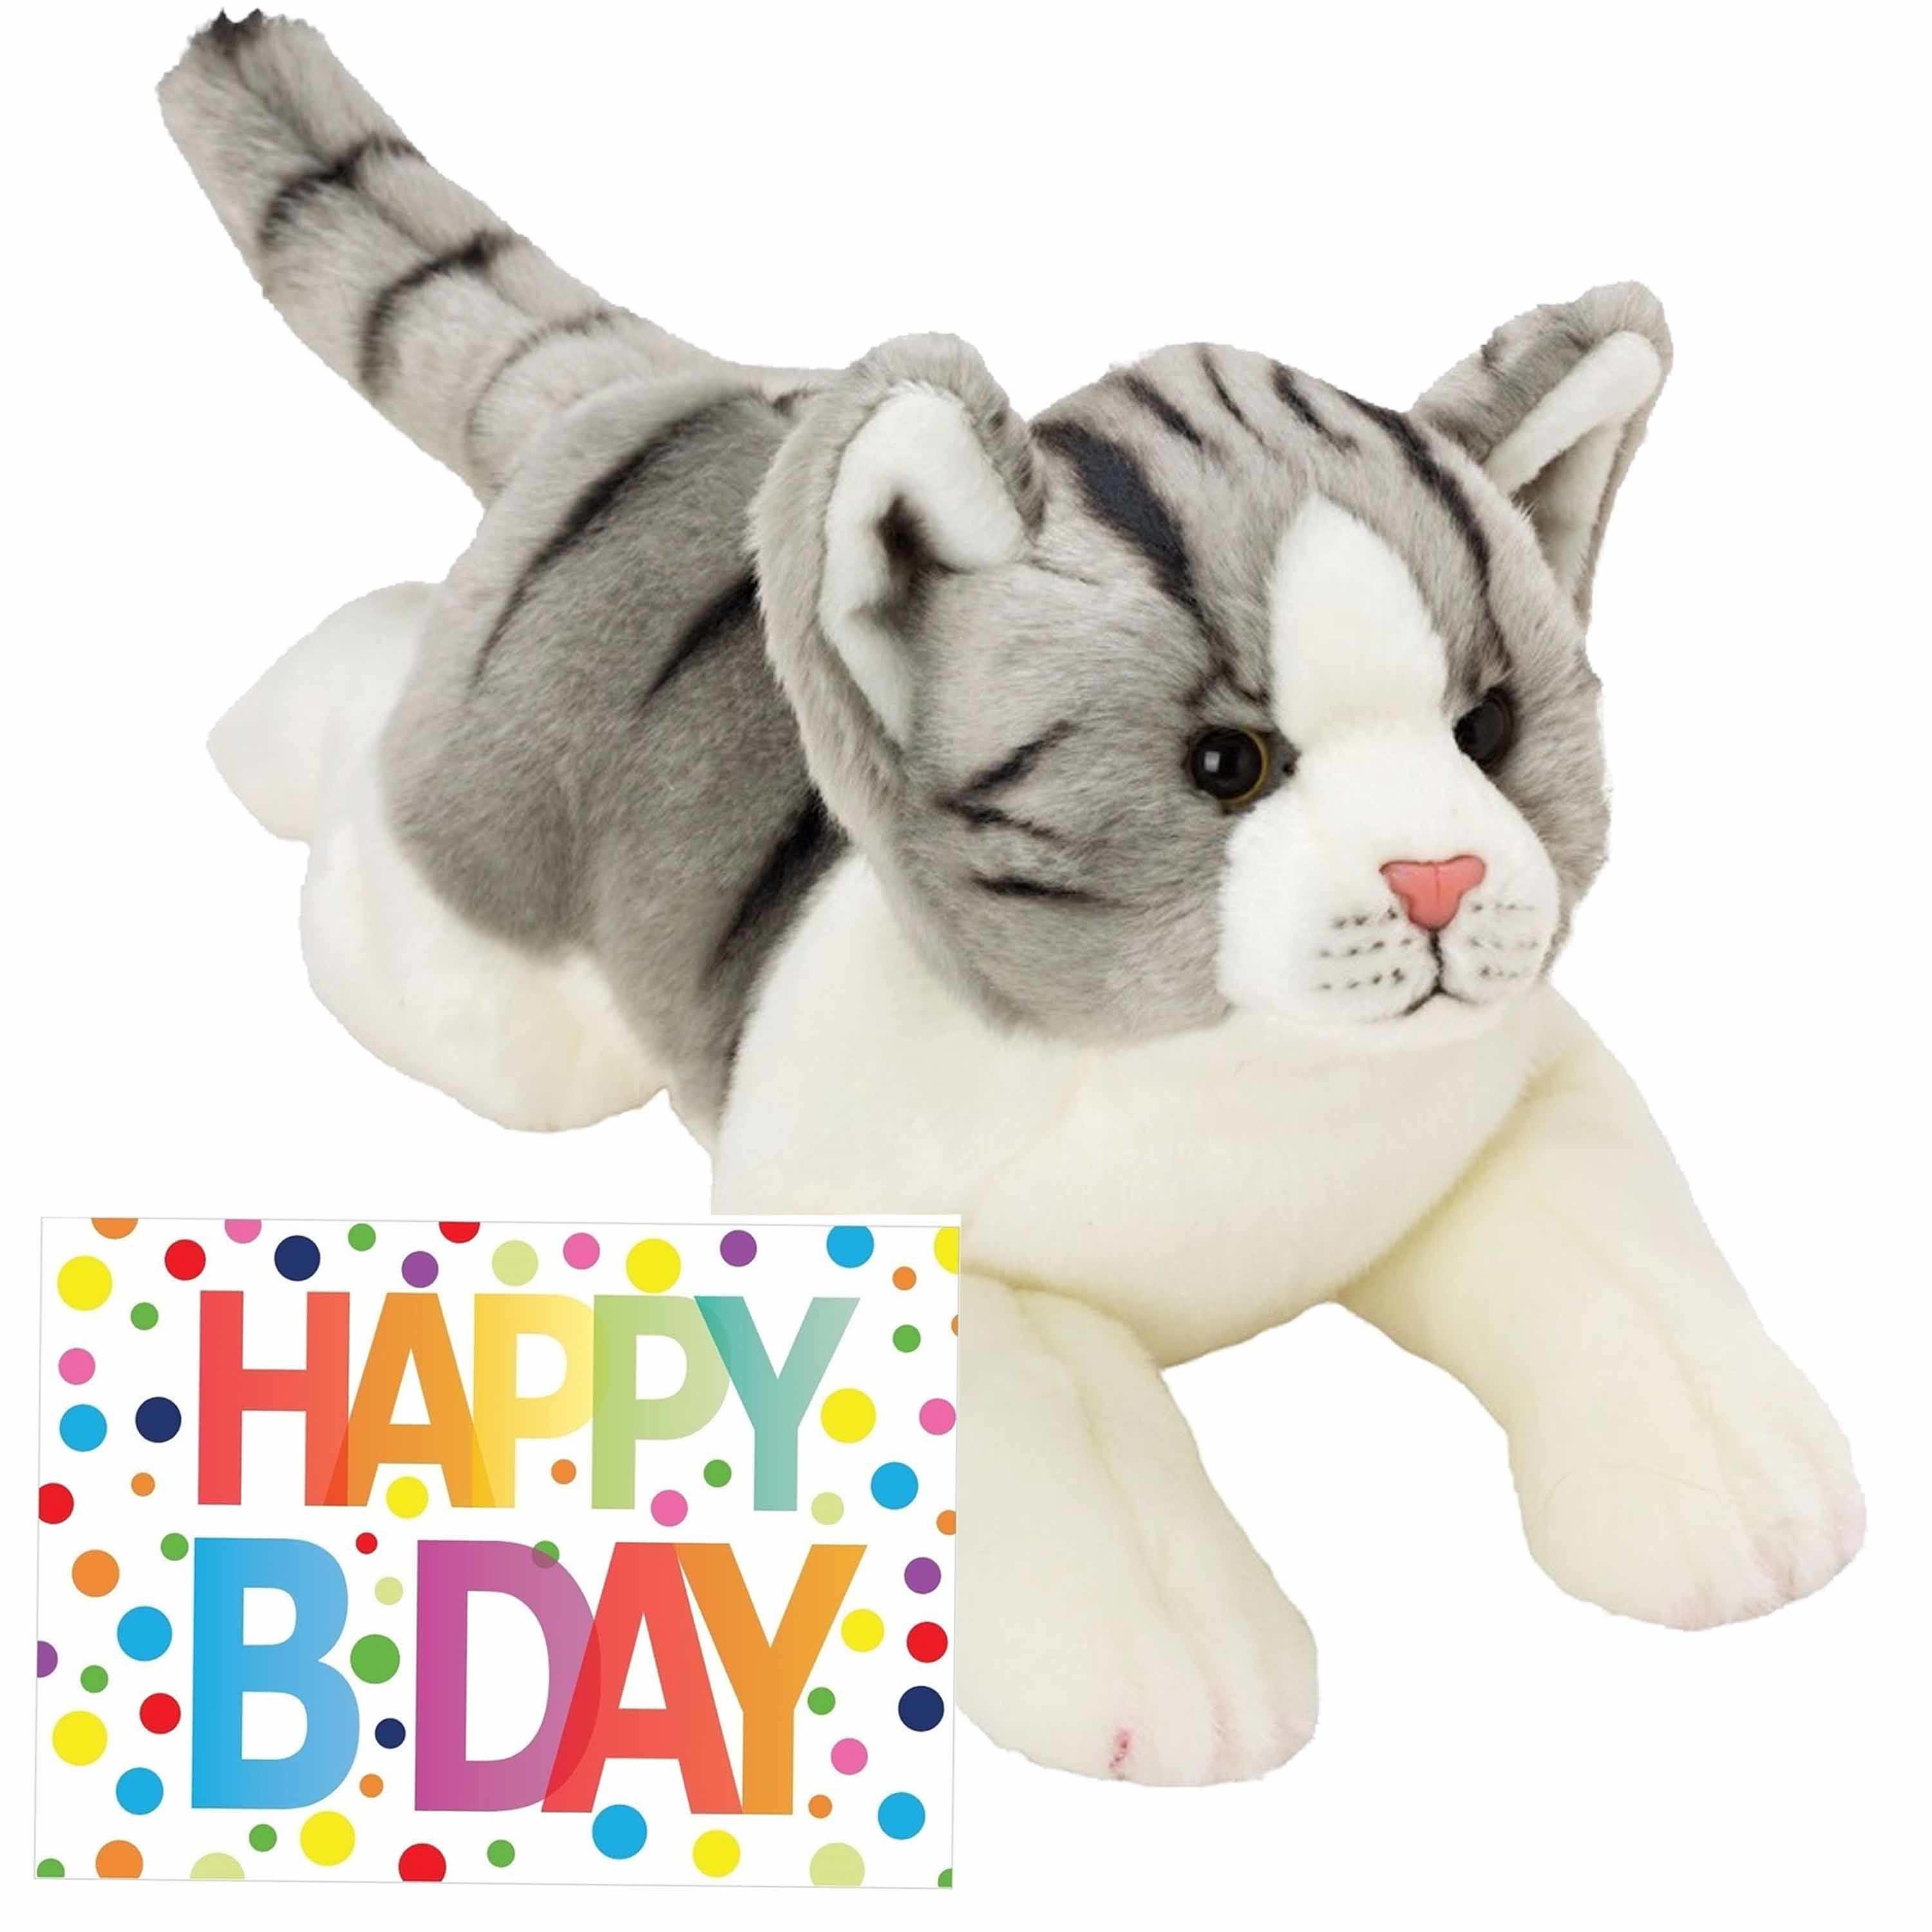 Pluche knuffel grijs-witte kat-poes 33 met A5-size Happy Birthday wenskaart